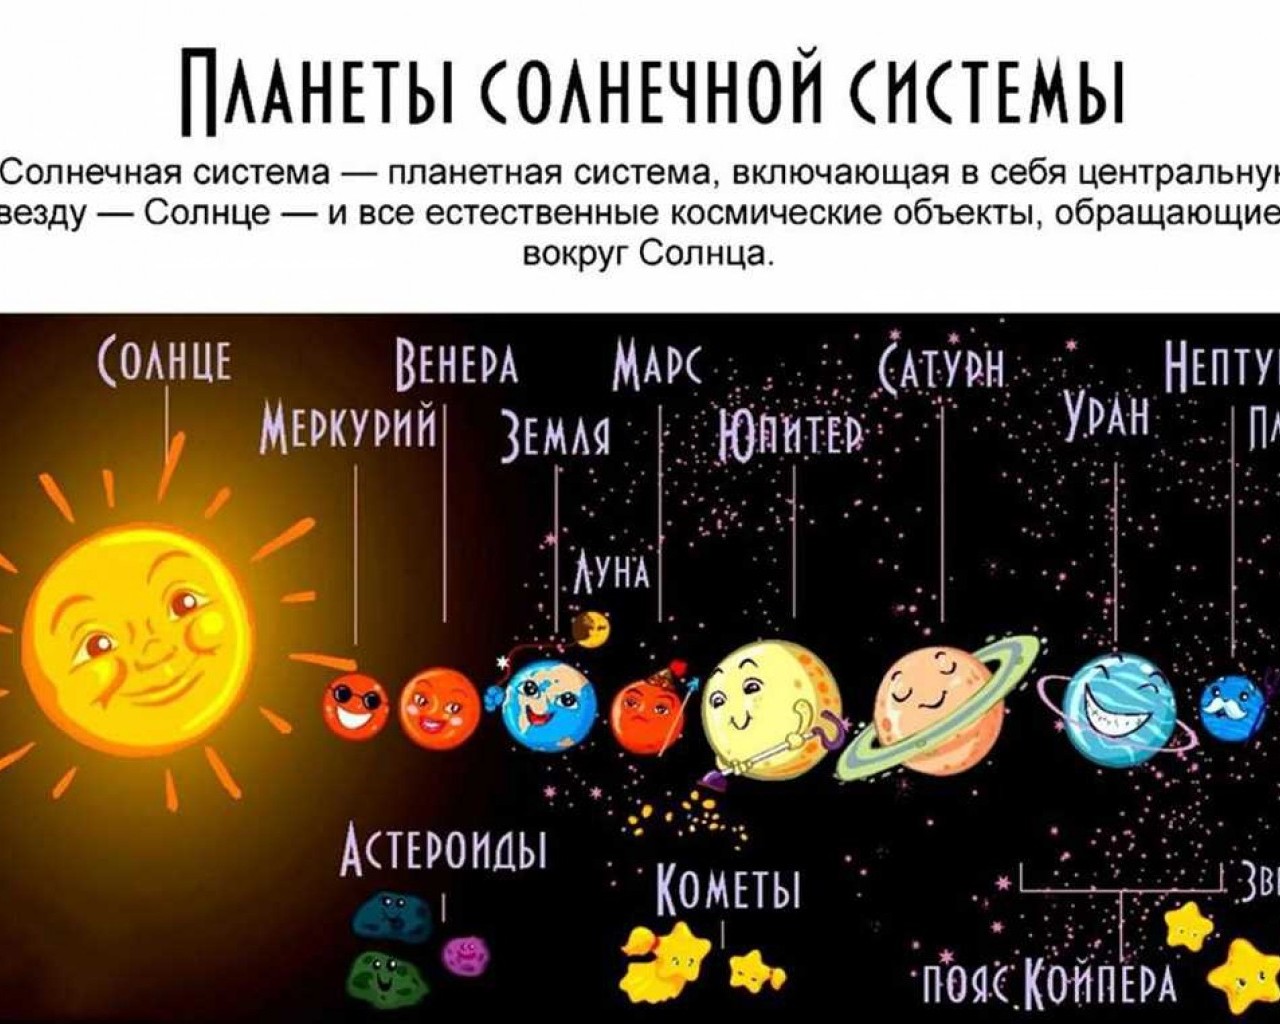 Системы разных планет. Солнечная система с названиями планет. Солнечная система с названиями планет для детей. Девять планет солнечной системы. Солнечная система с названиями планет по порядку от солнца для детей.